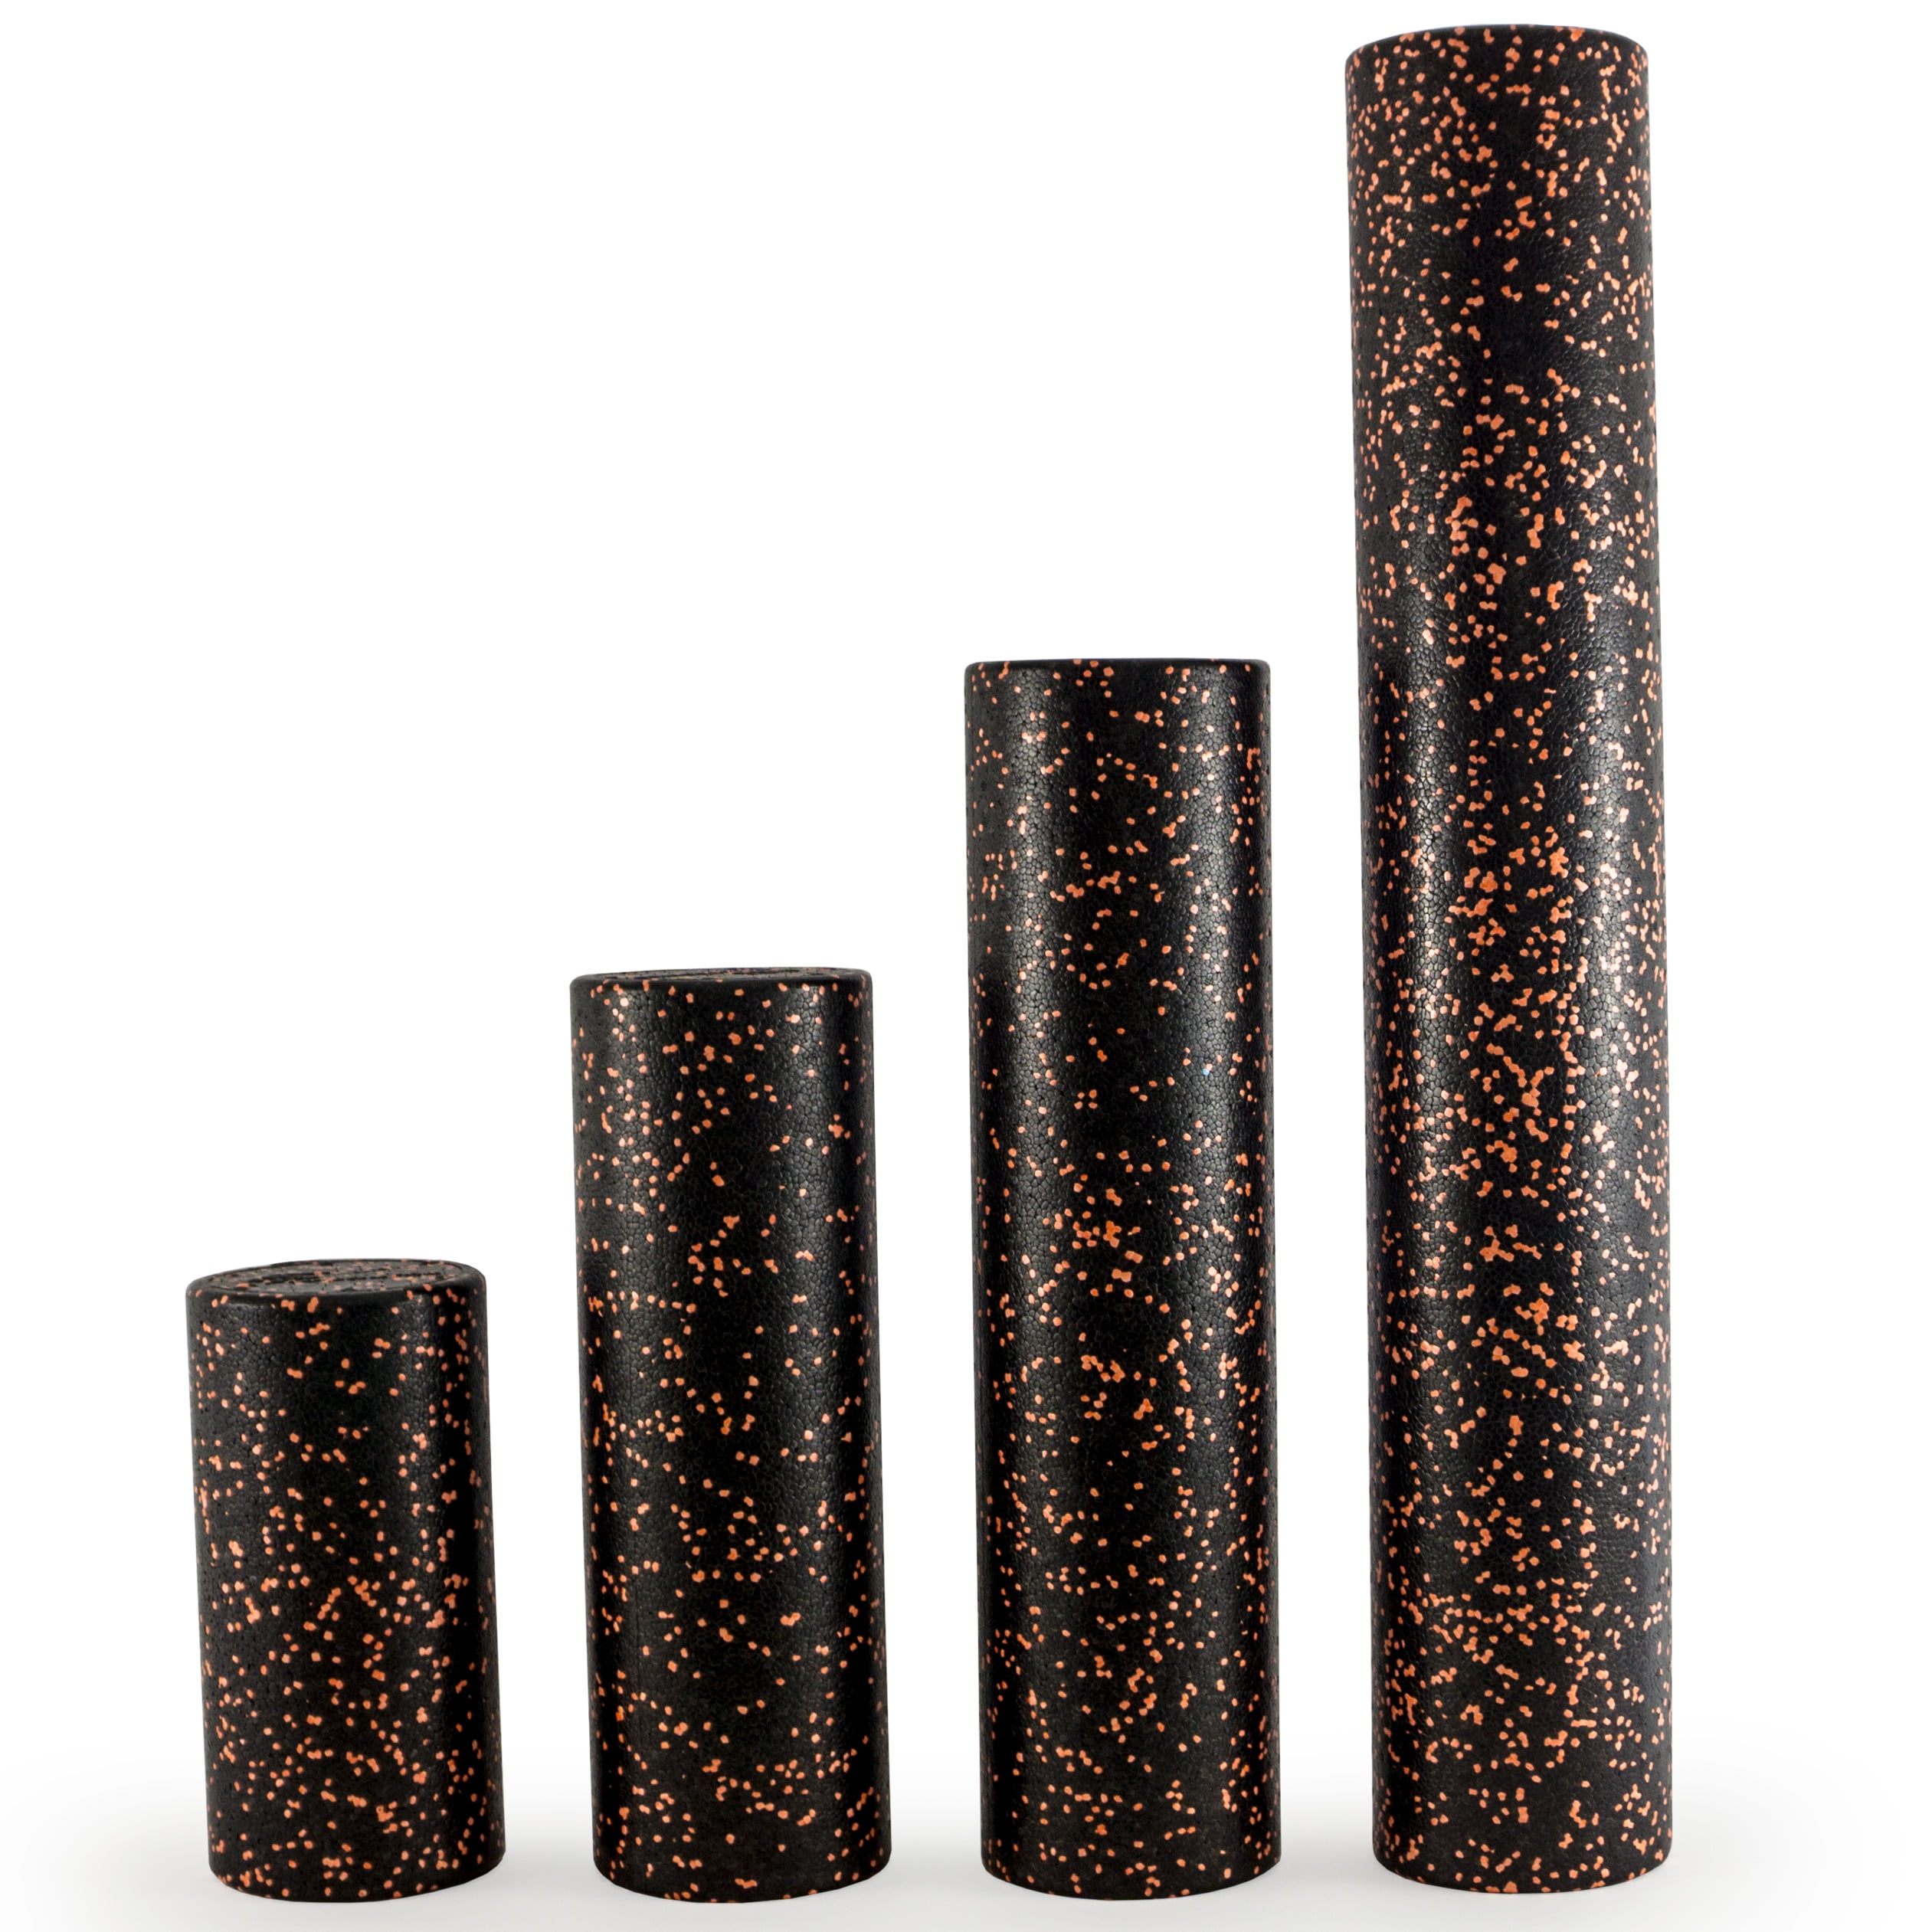 ProsourceFit High Density Speckled Black Foam Rollers